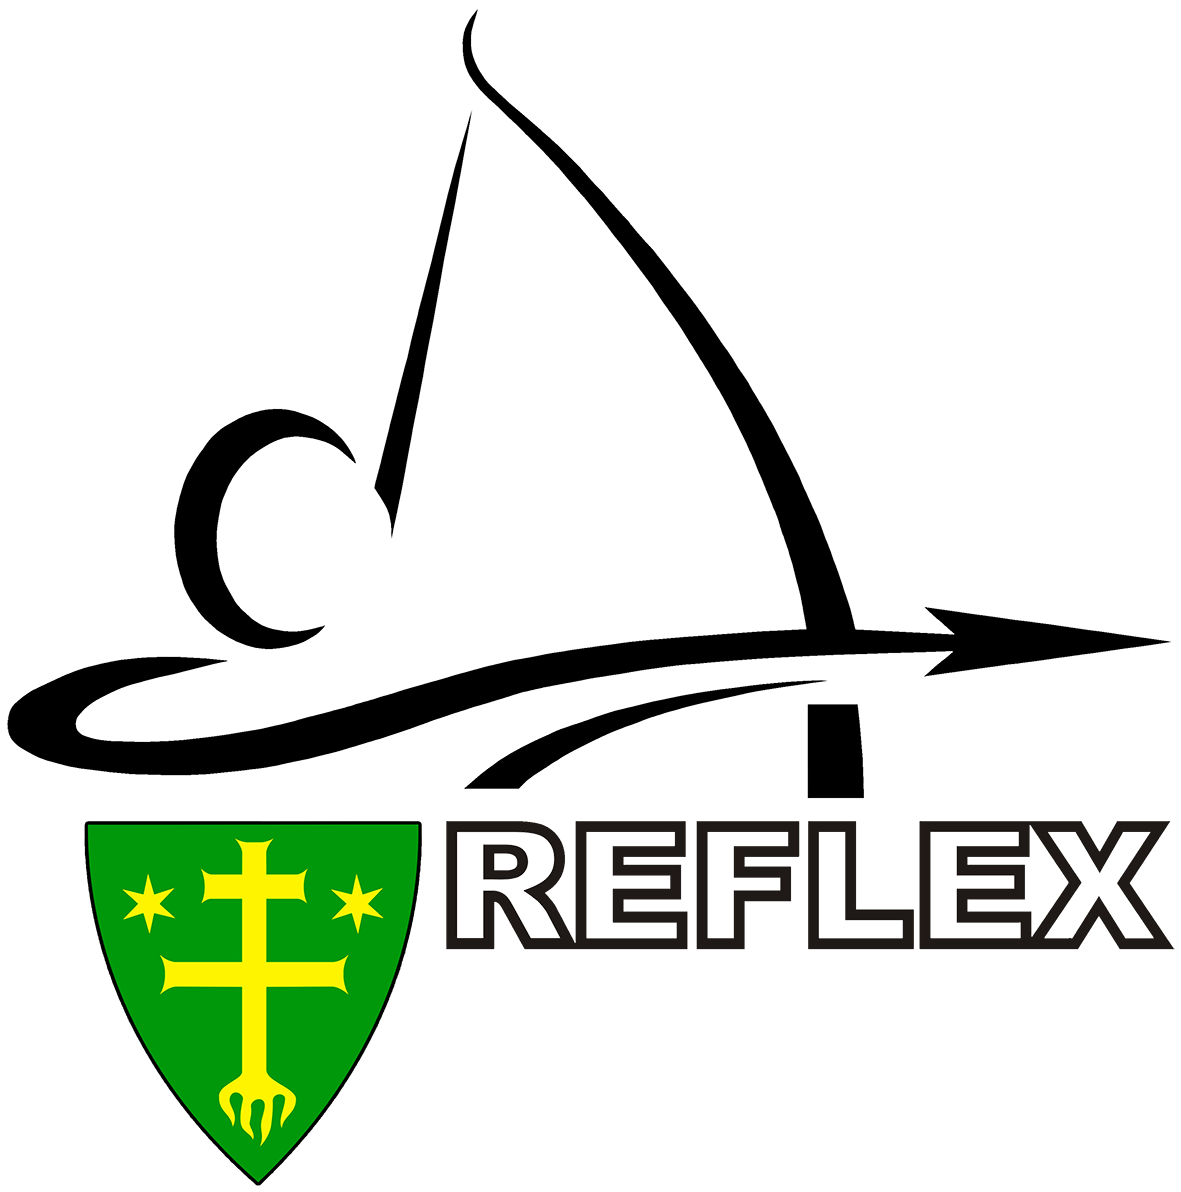 LK Reflex Žilina